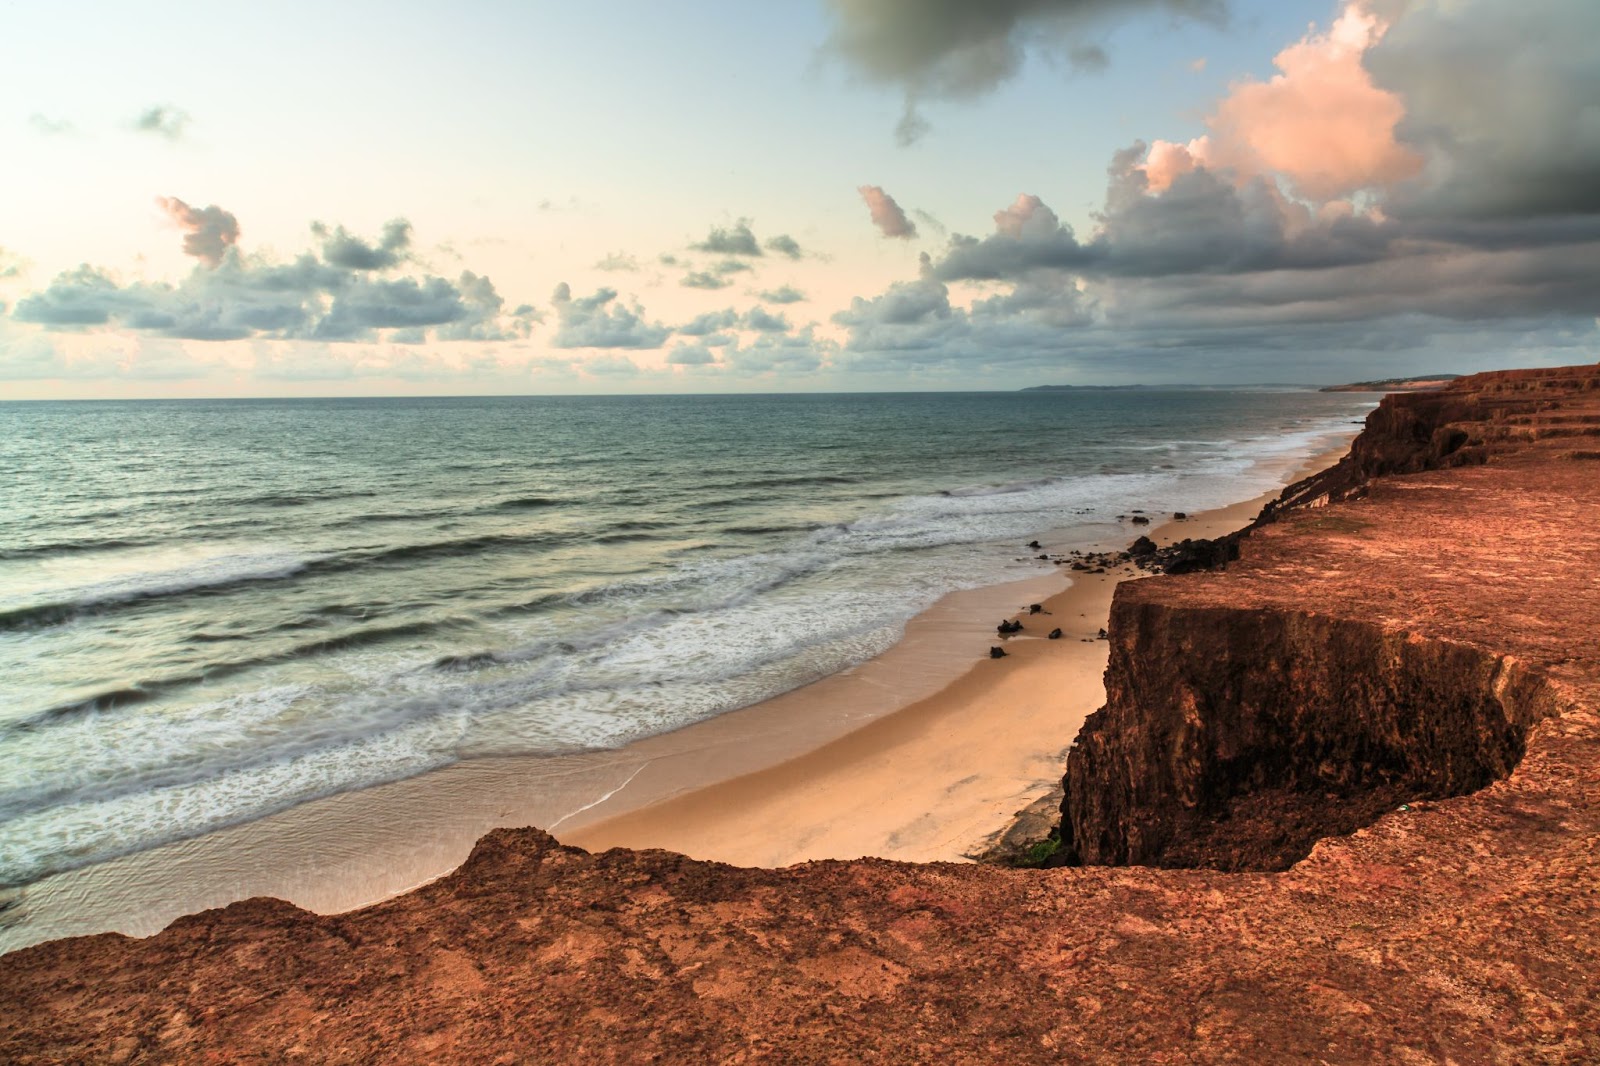 Praia da Pipa vista de cima do chapadão. Mar quase sem ondas em tom de verde escuro com faixa de areia dourada à sua frente.